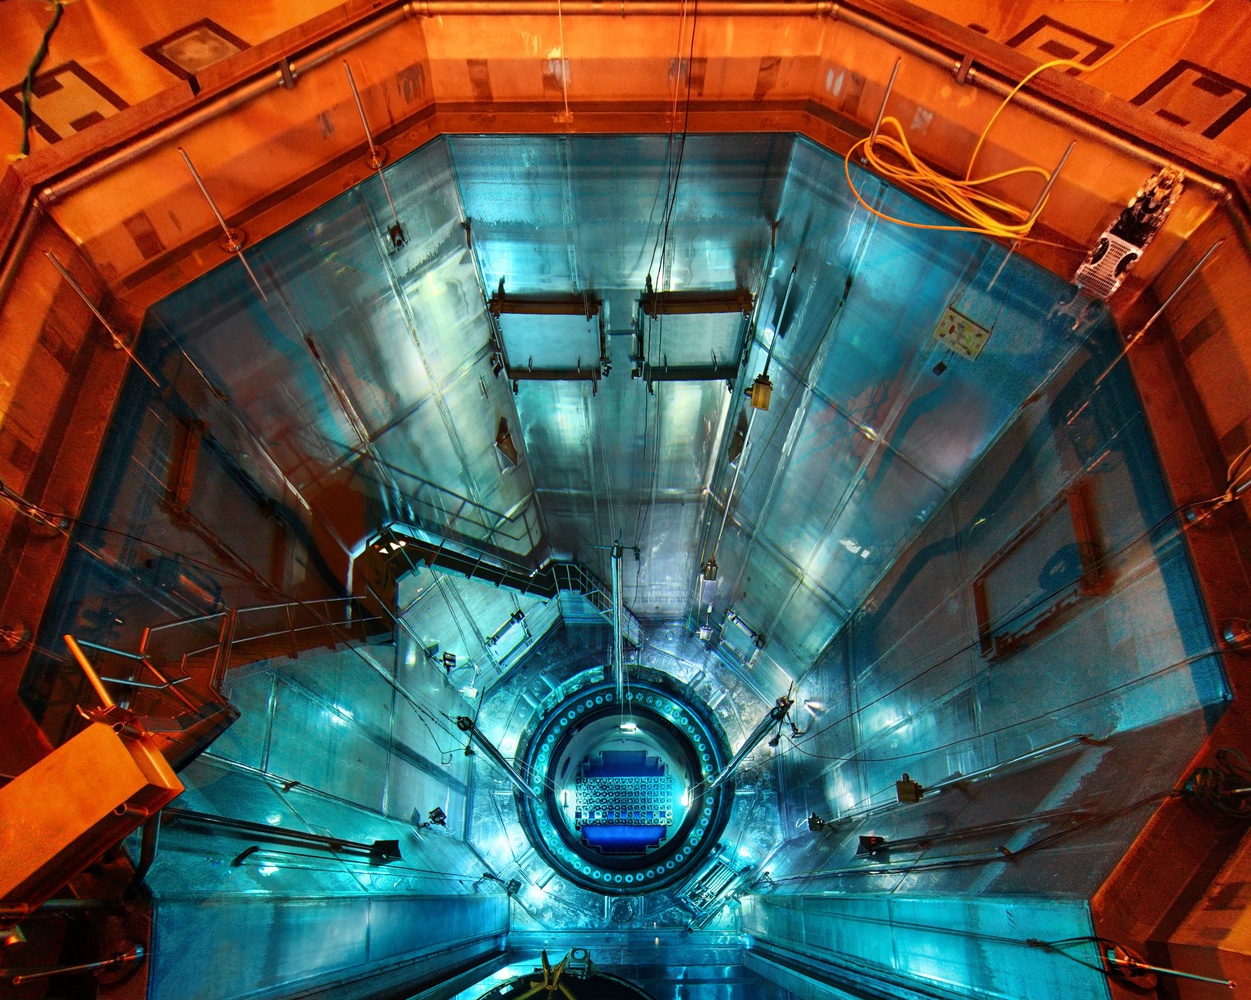 Reaktorkern, Blick von Lademaschine, KKG Gundremmingen